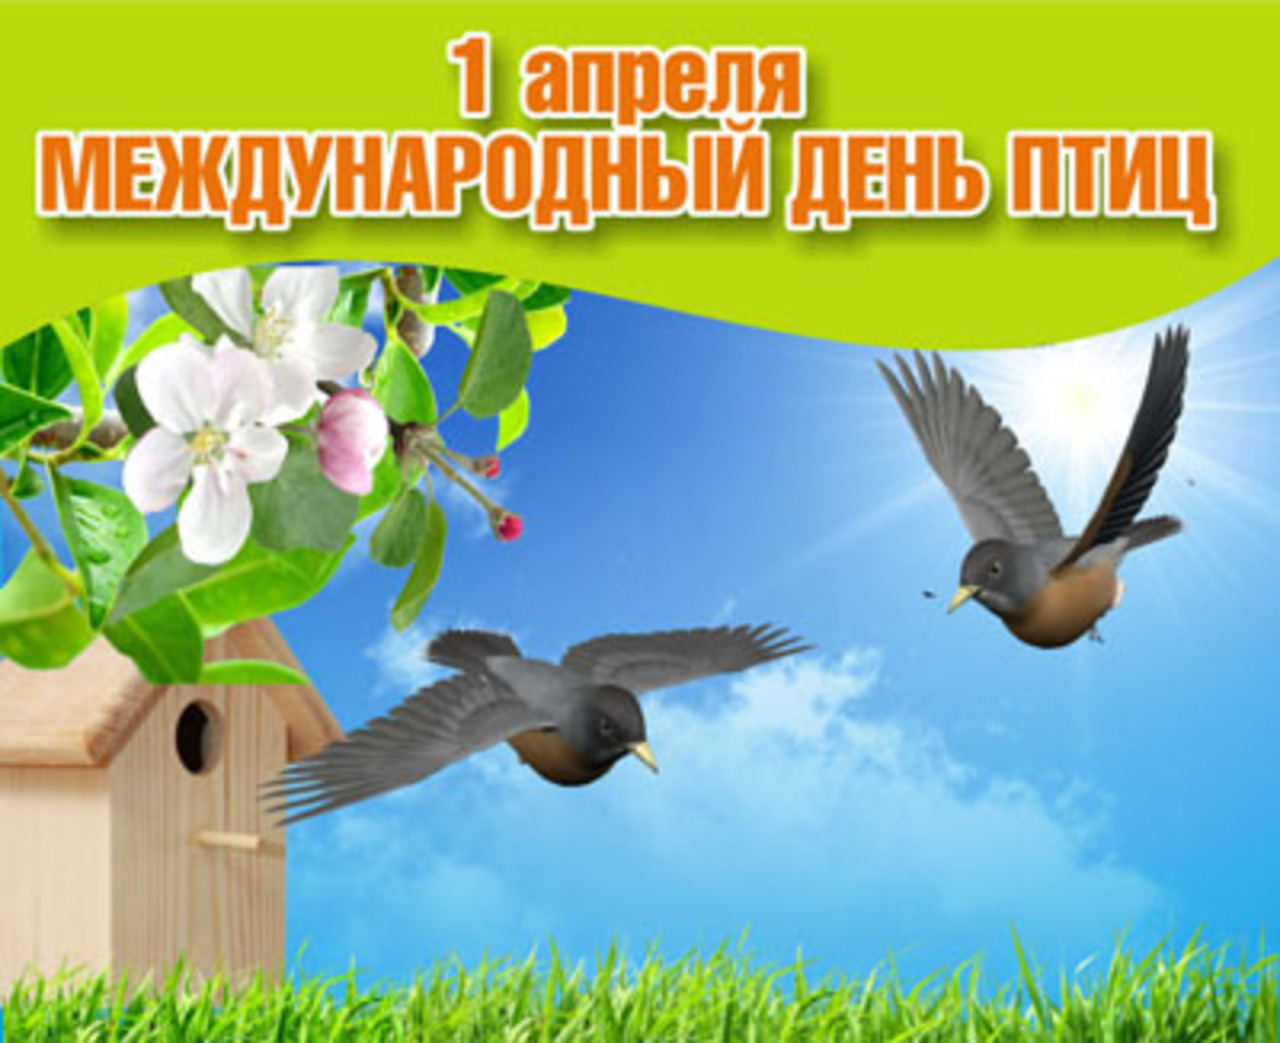 Весенний день птиц. День птиц. Международный день птиц. 1 Апреля Всемирный день птиц. День птиц картинки.